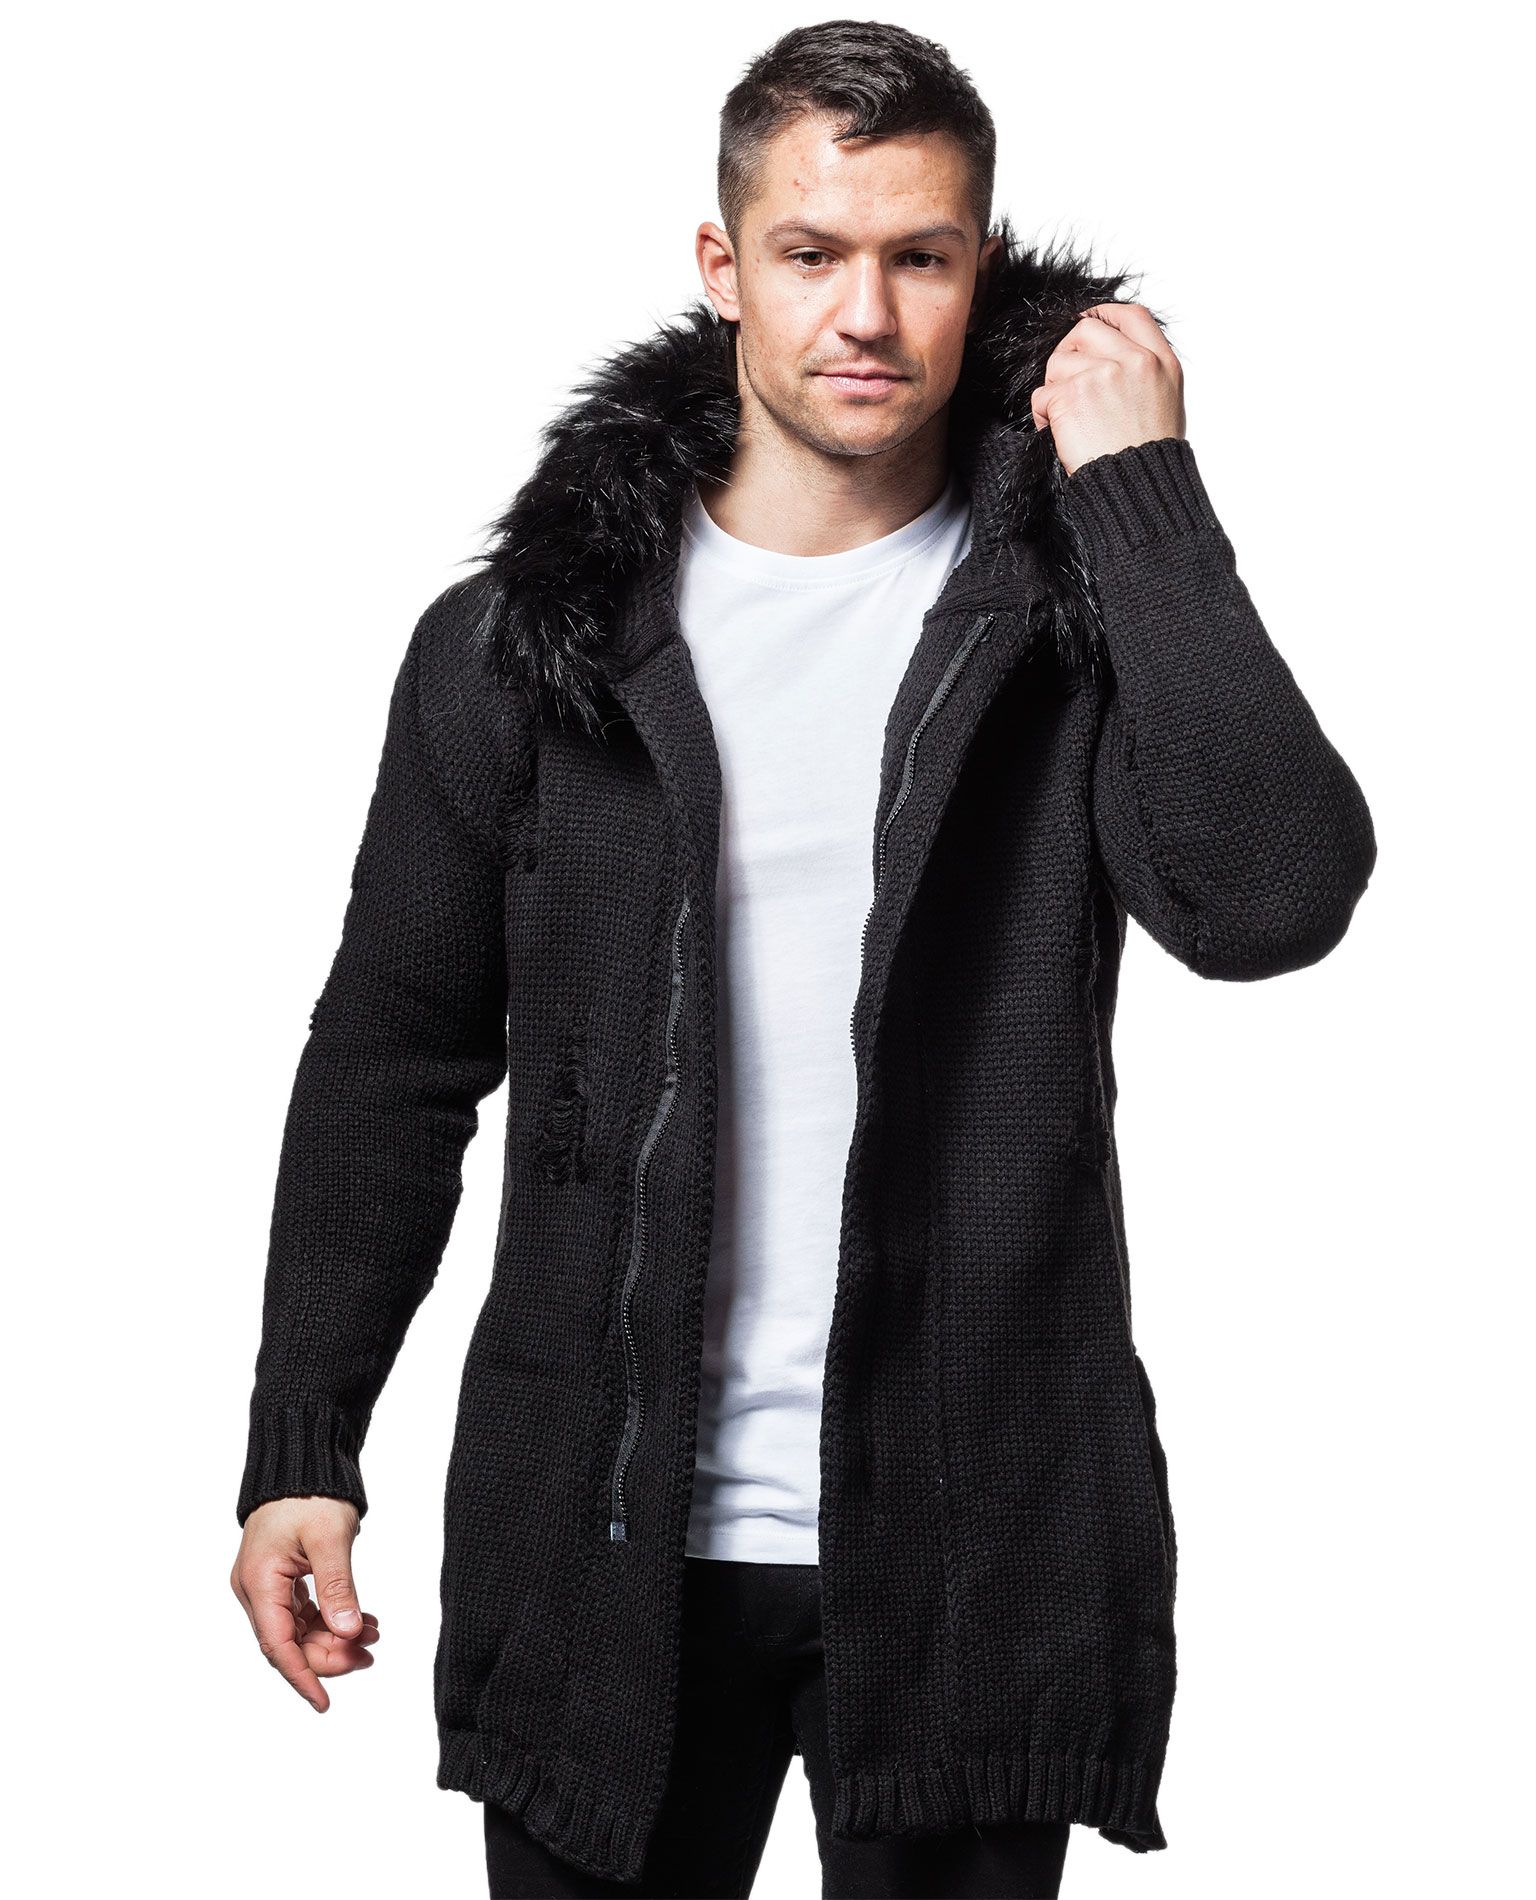 Fur Knitwear Black Jerone - 3509 - Jumpers - Jerone.com